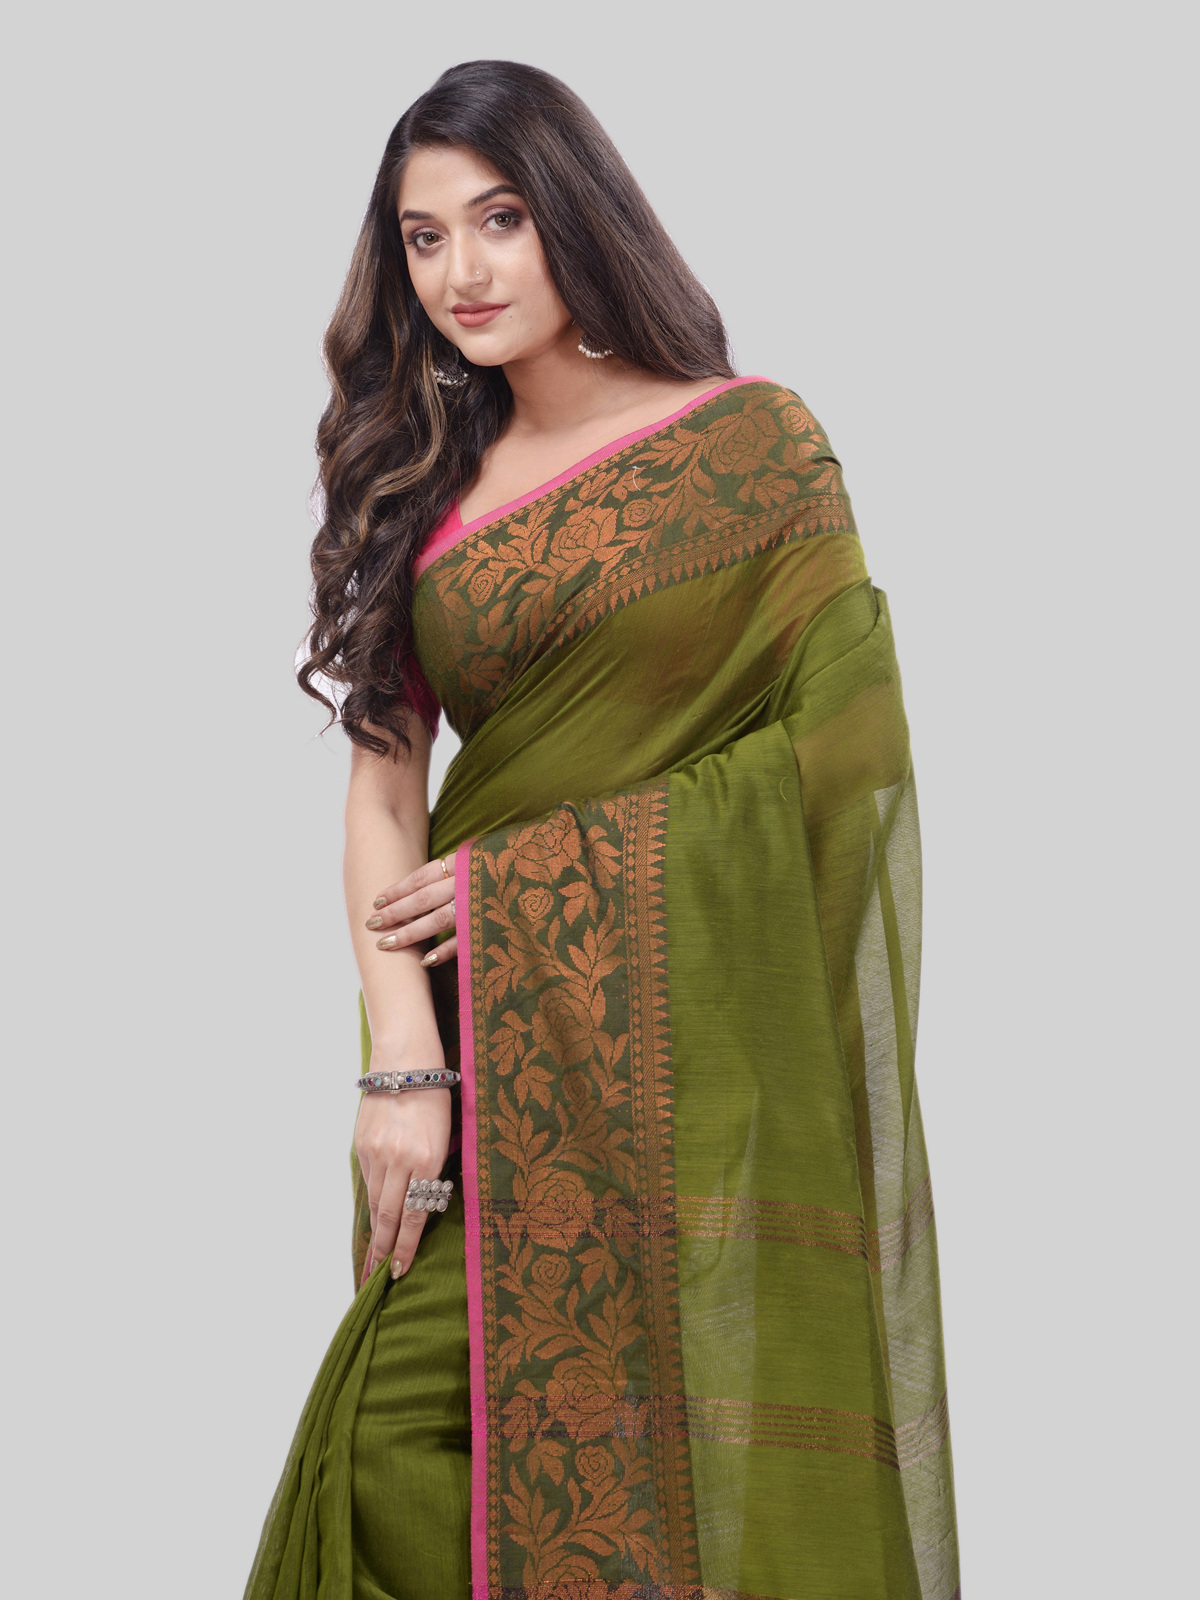 DESH BIDESH Women`s Cotton Handloom Cotton Silk Saree Gulab Work With Blouse Piece(Dark Green)